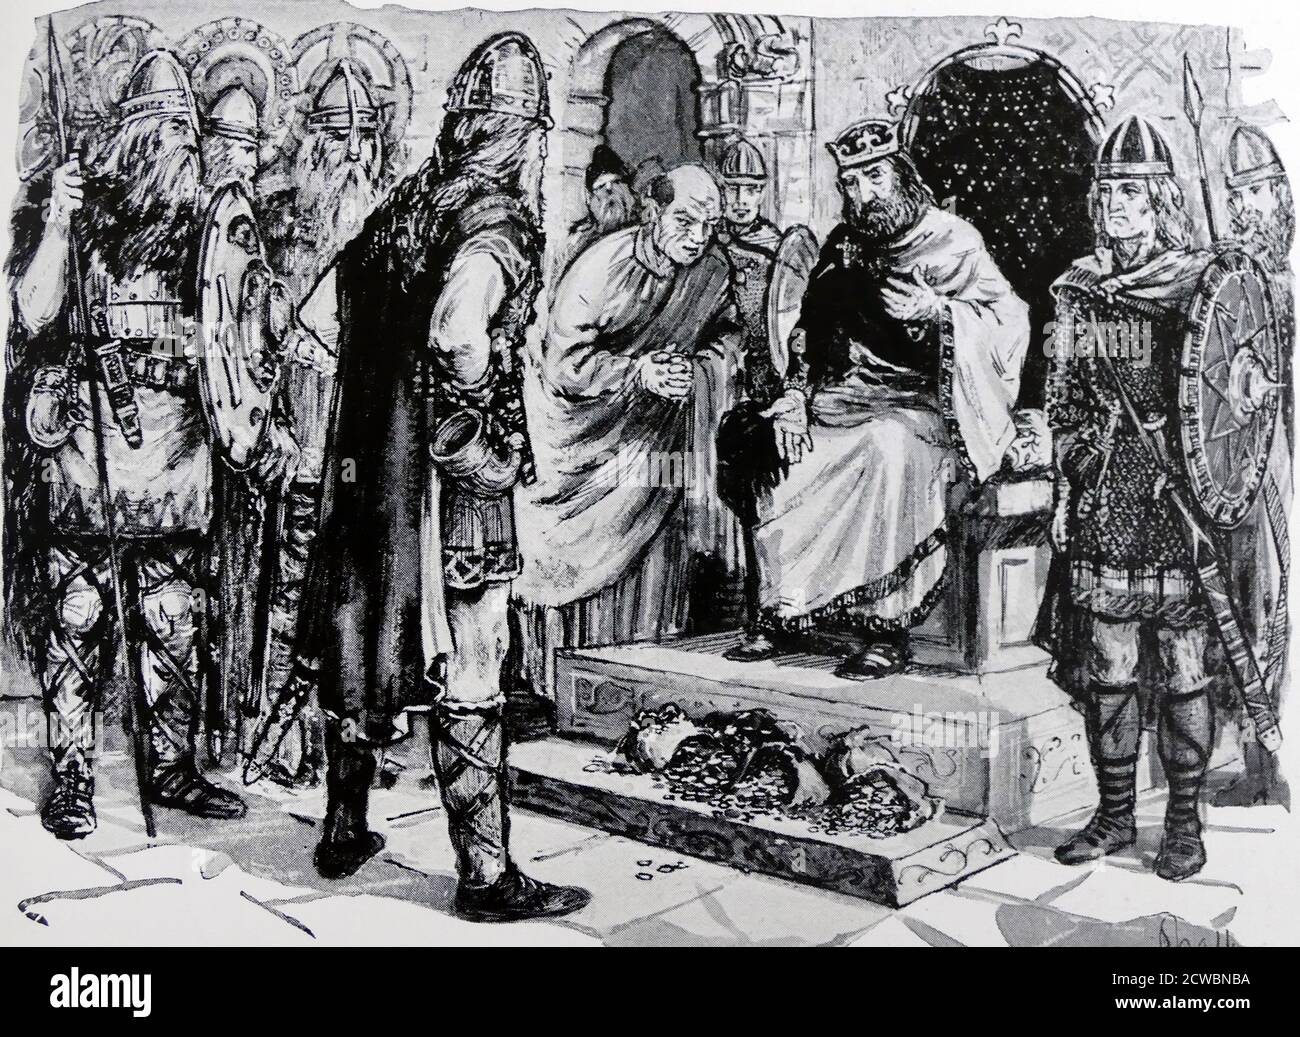 Illustrazione raffigurante il re d'Inghilterra Ethelred II che paga oro ai vichinghi. Ethelred II (c. 966 - 1016), conosciuto come The Unready, fu Re degli Inglesi dal 978 al 1013 e di nuovo dal 1014 fino alla sua morte. Foto Stock